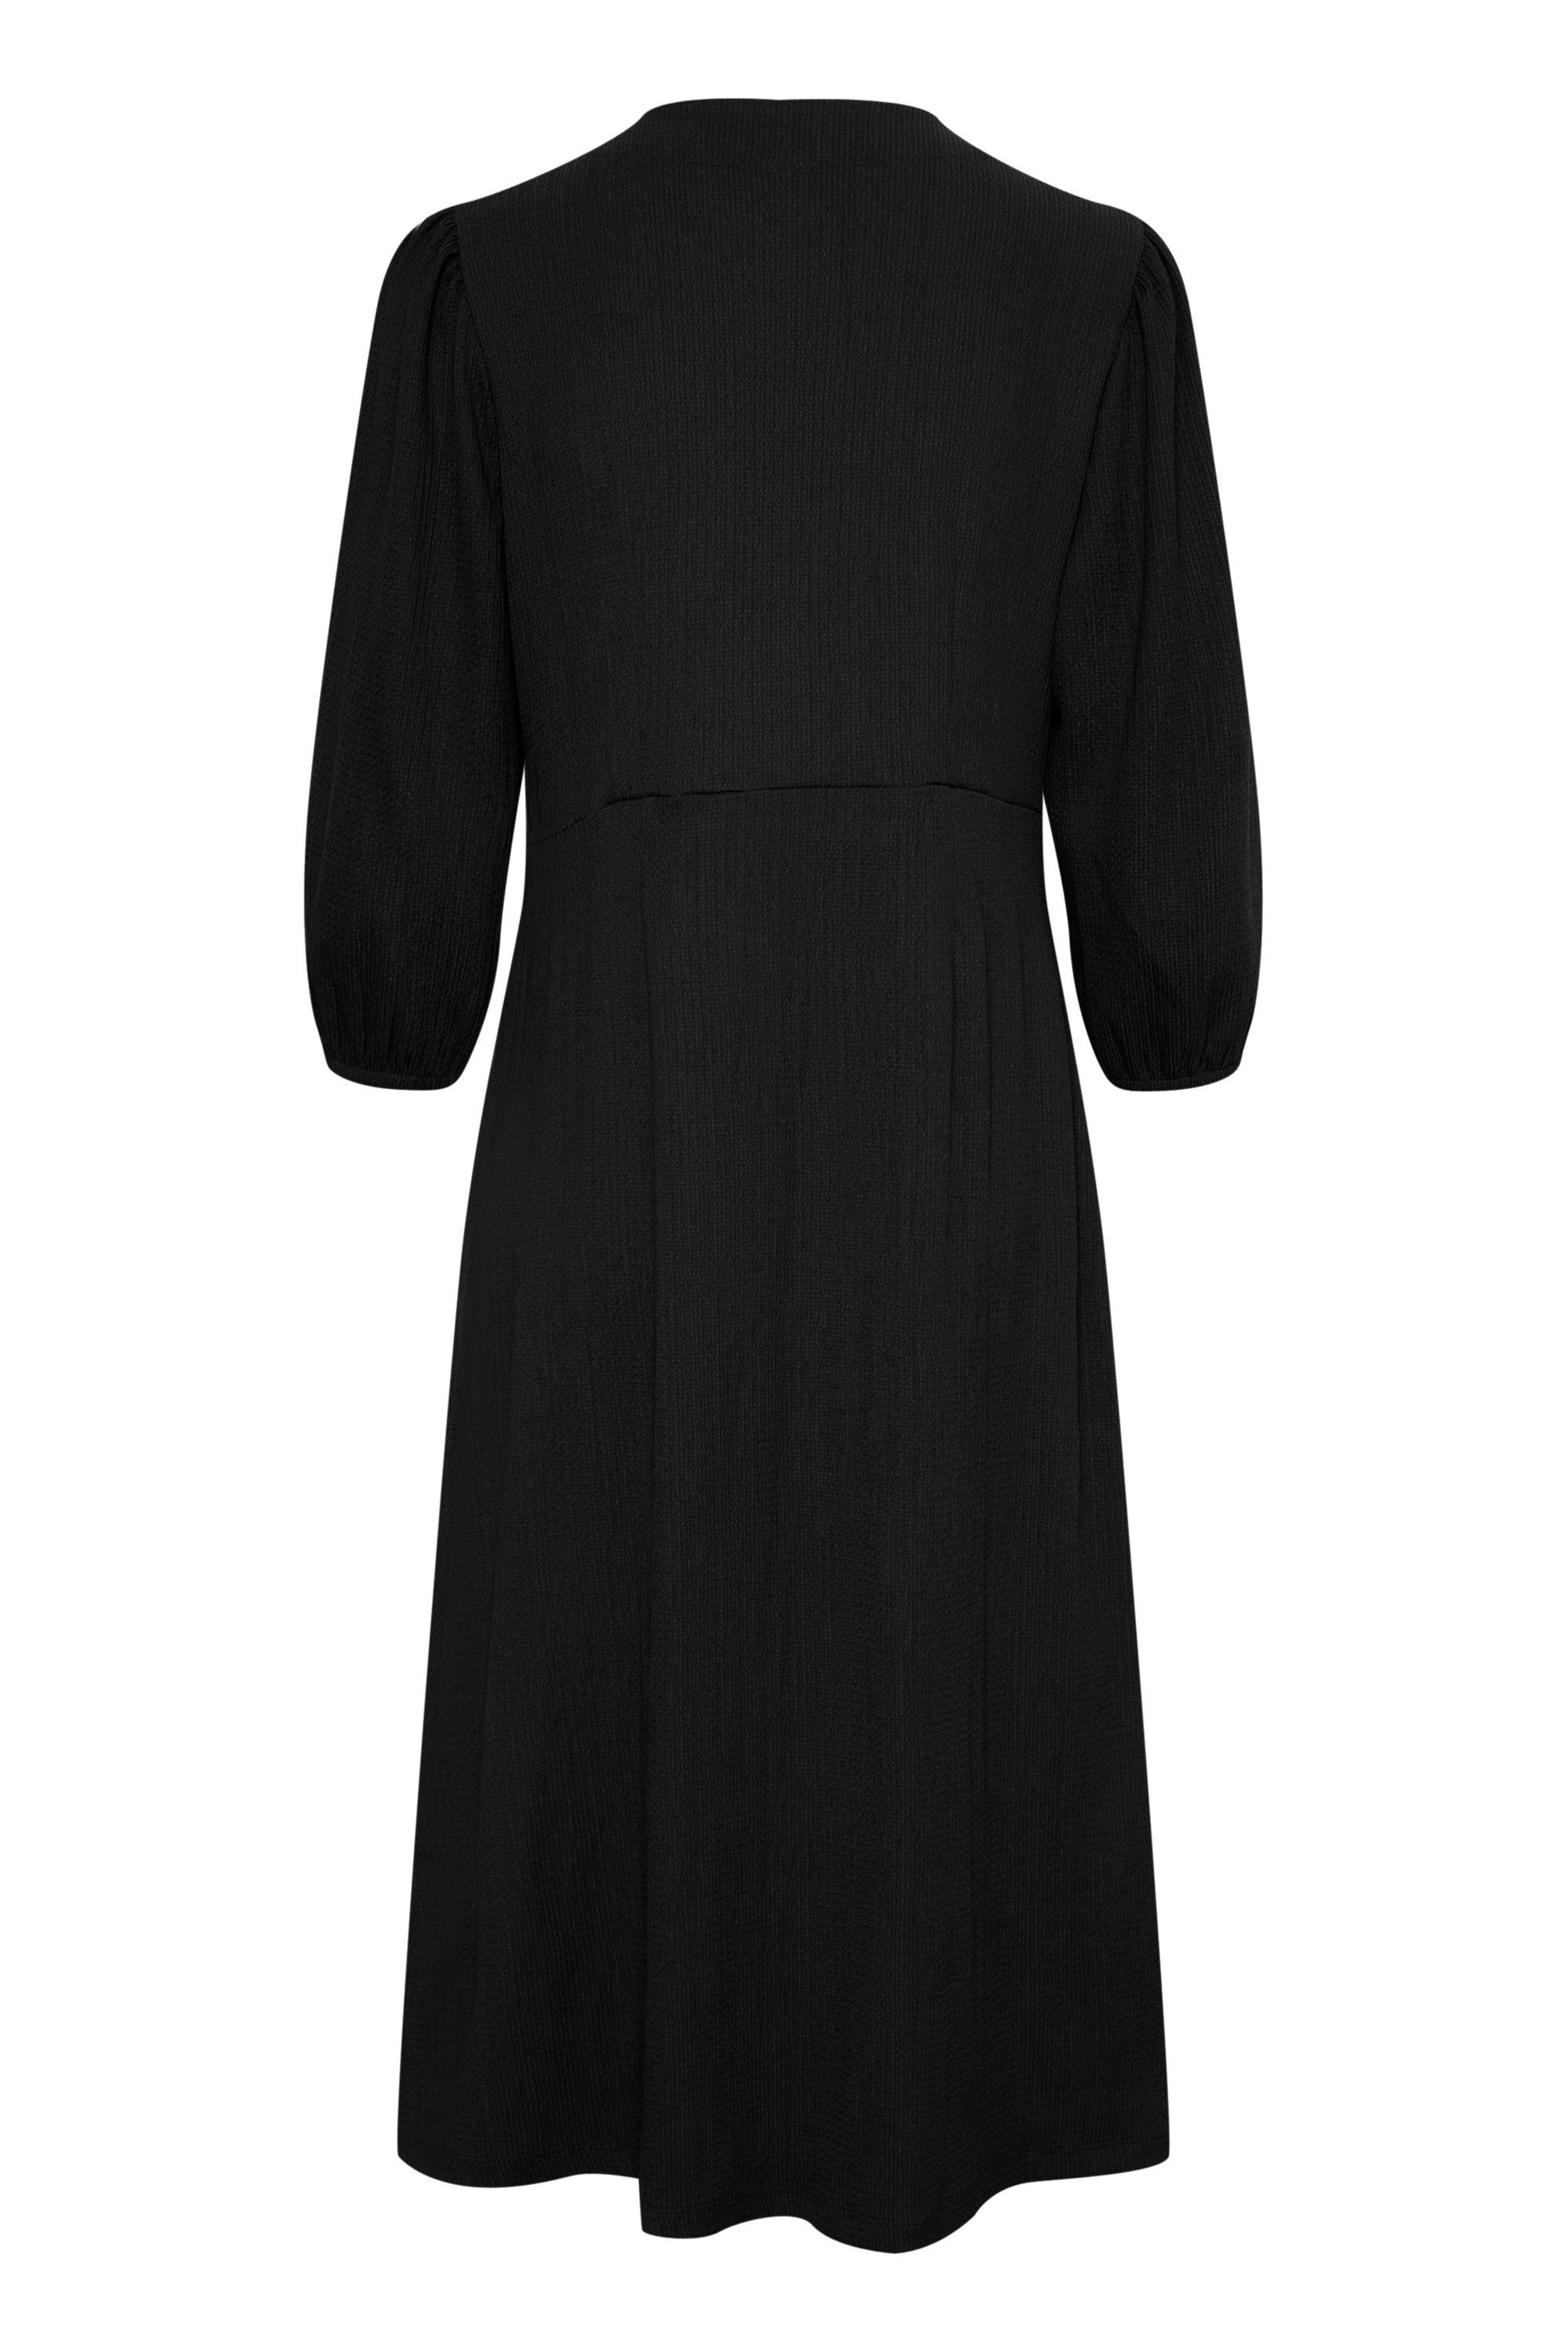 Jerseykleid Black Deep Kleid KAkatrine KAFFE